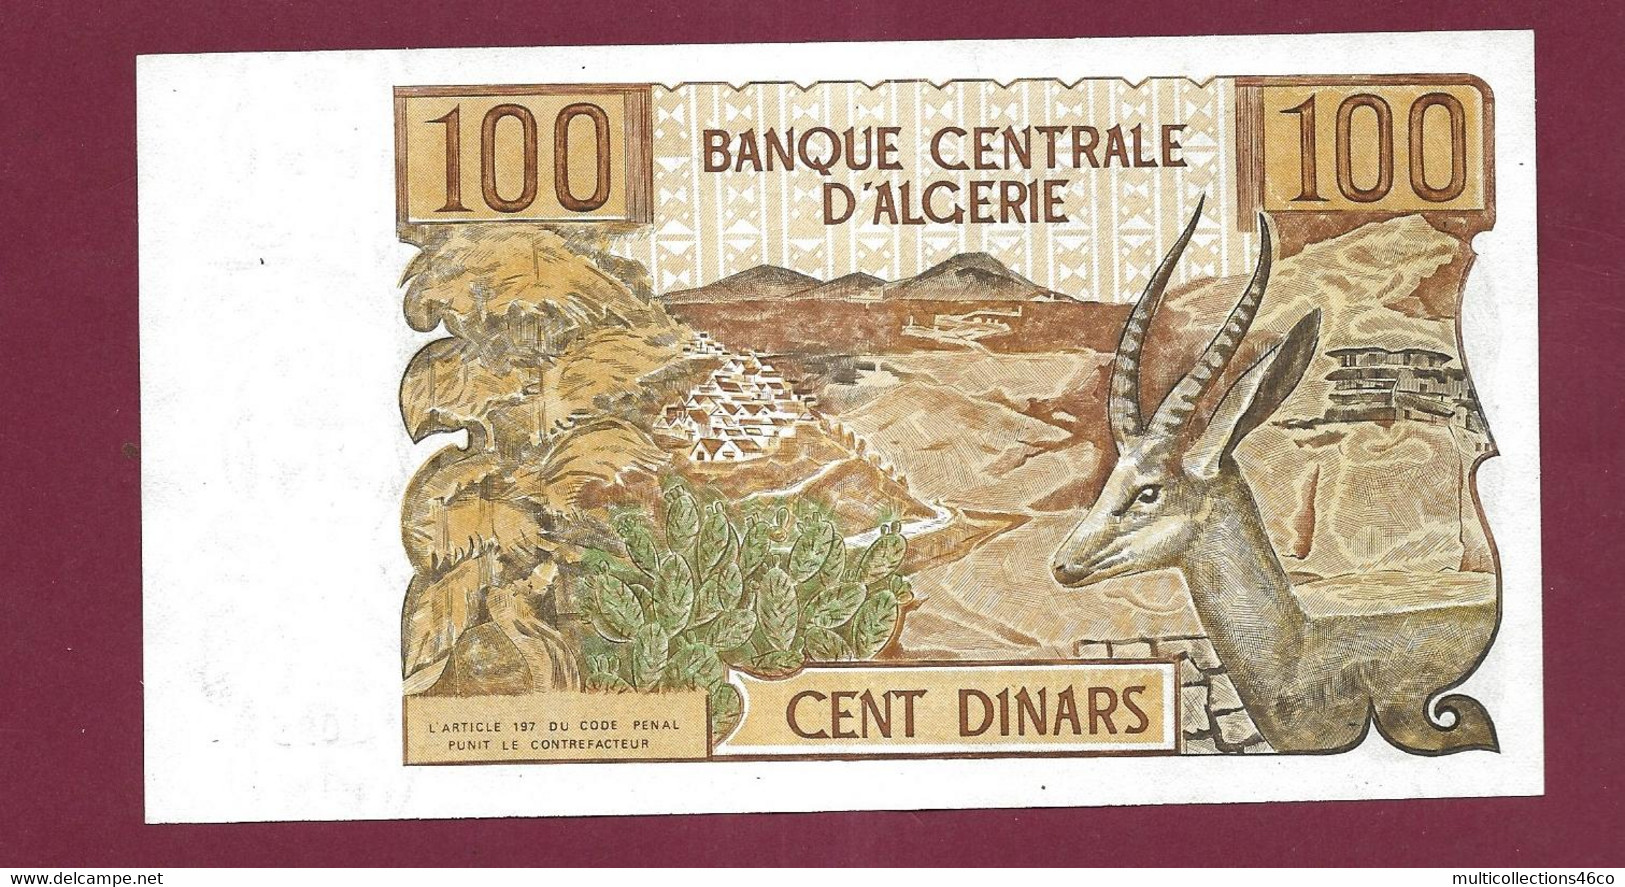 010222 - Billet BANQUE CENTRALE D'ALGERIE Cent 100 Dinars 1-11 - 1970 Neuf - Algeria